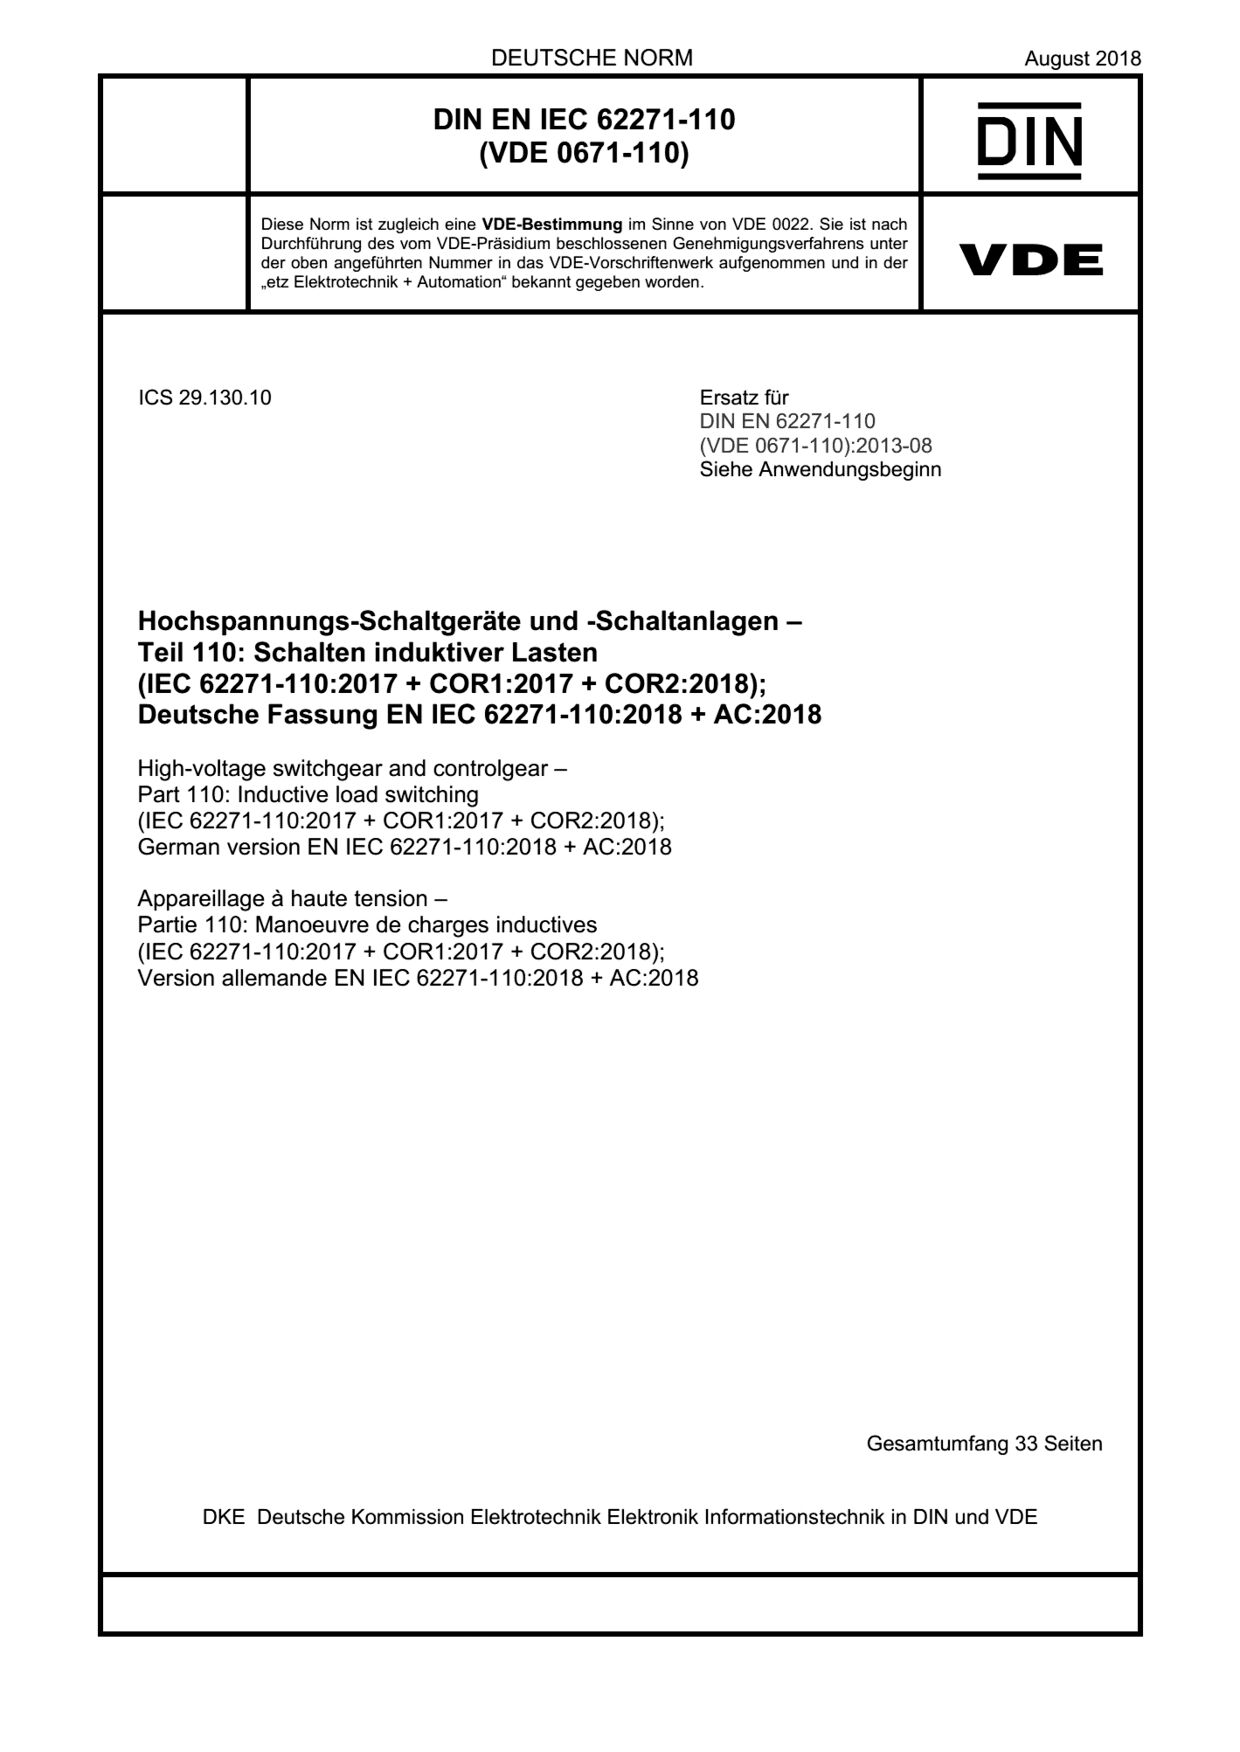 DIN EN IEC 62271-110:2018